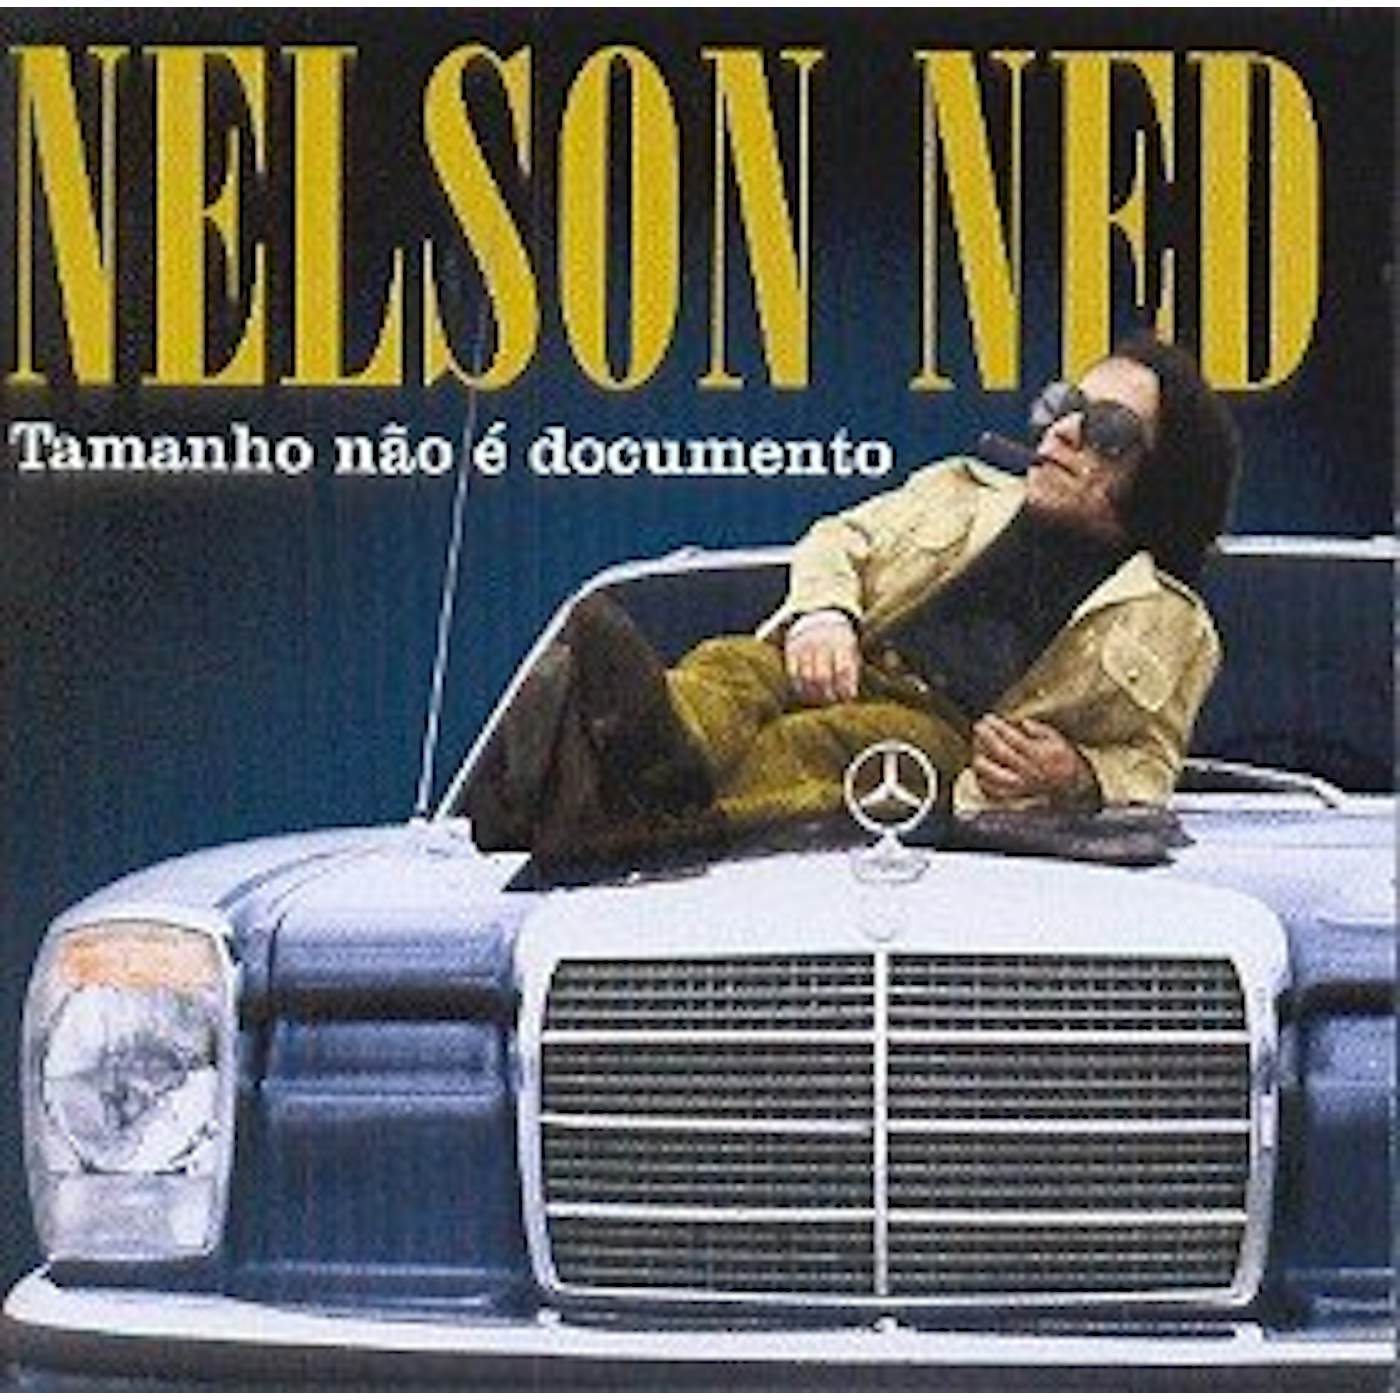 Nelson Ned TAMANHO NAO E DOCUMENTO CD